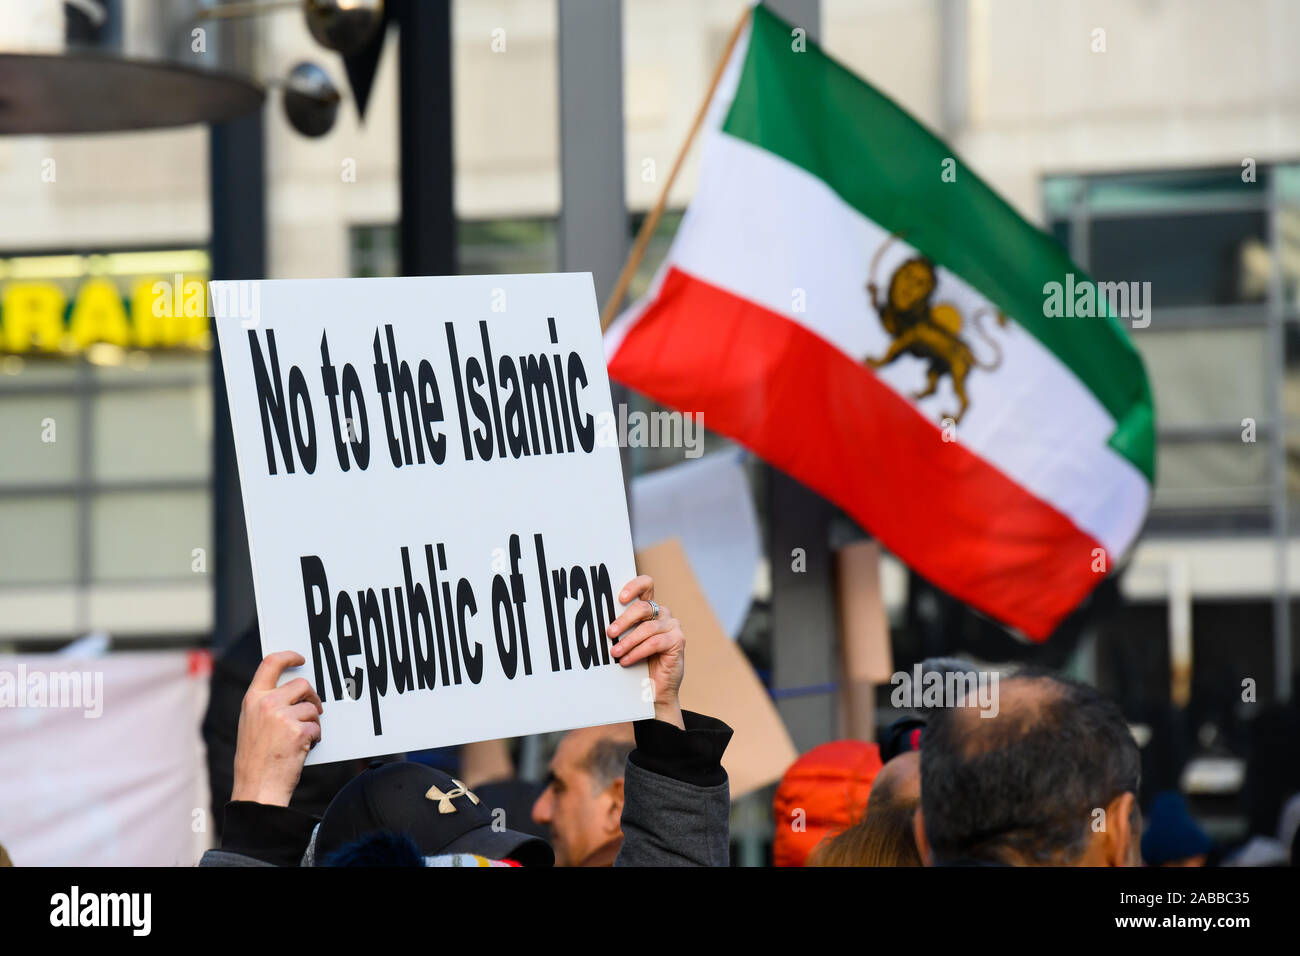 Torontonians versammeln sich Mel Lastman Square Unterstützung für die Protestierenden im Iran verurteilt das Regime, während ein pre-revolution Wellen Flagge zu zeigen. Stockfoto